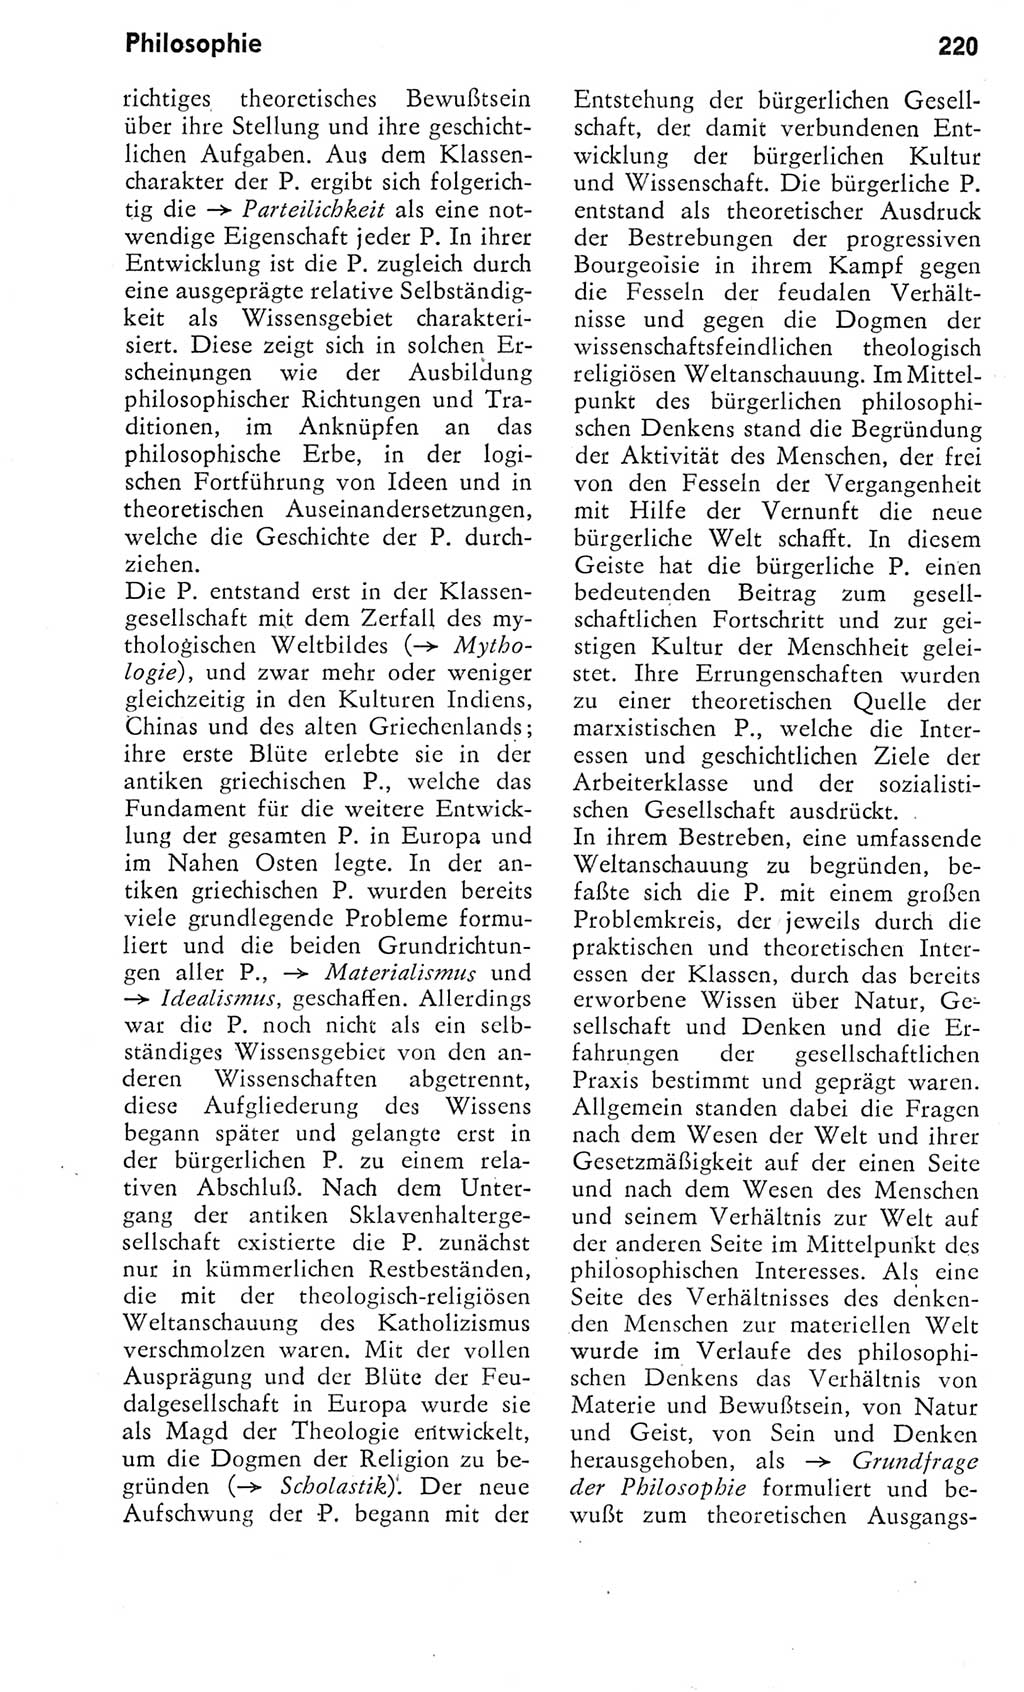 Kleines Wörterbuch der marxistisch-leninistischen Philosophie [Deutsche Demokratische Republik (DDR)] 1975, Seite 220 (Kl. Wb. ML Phil. DDR 1975, S. 220)